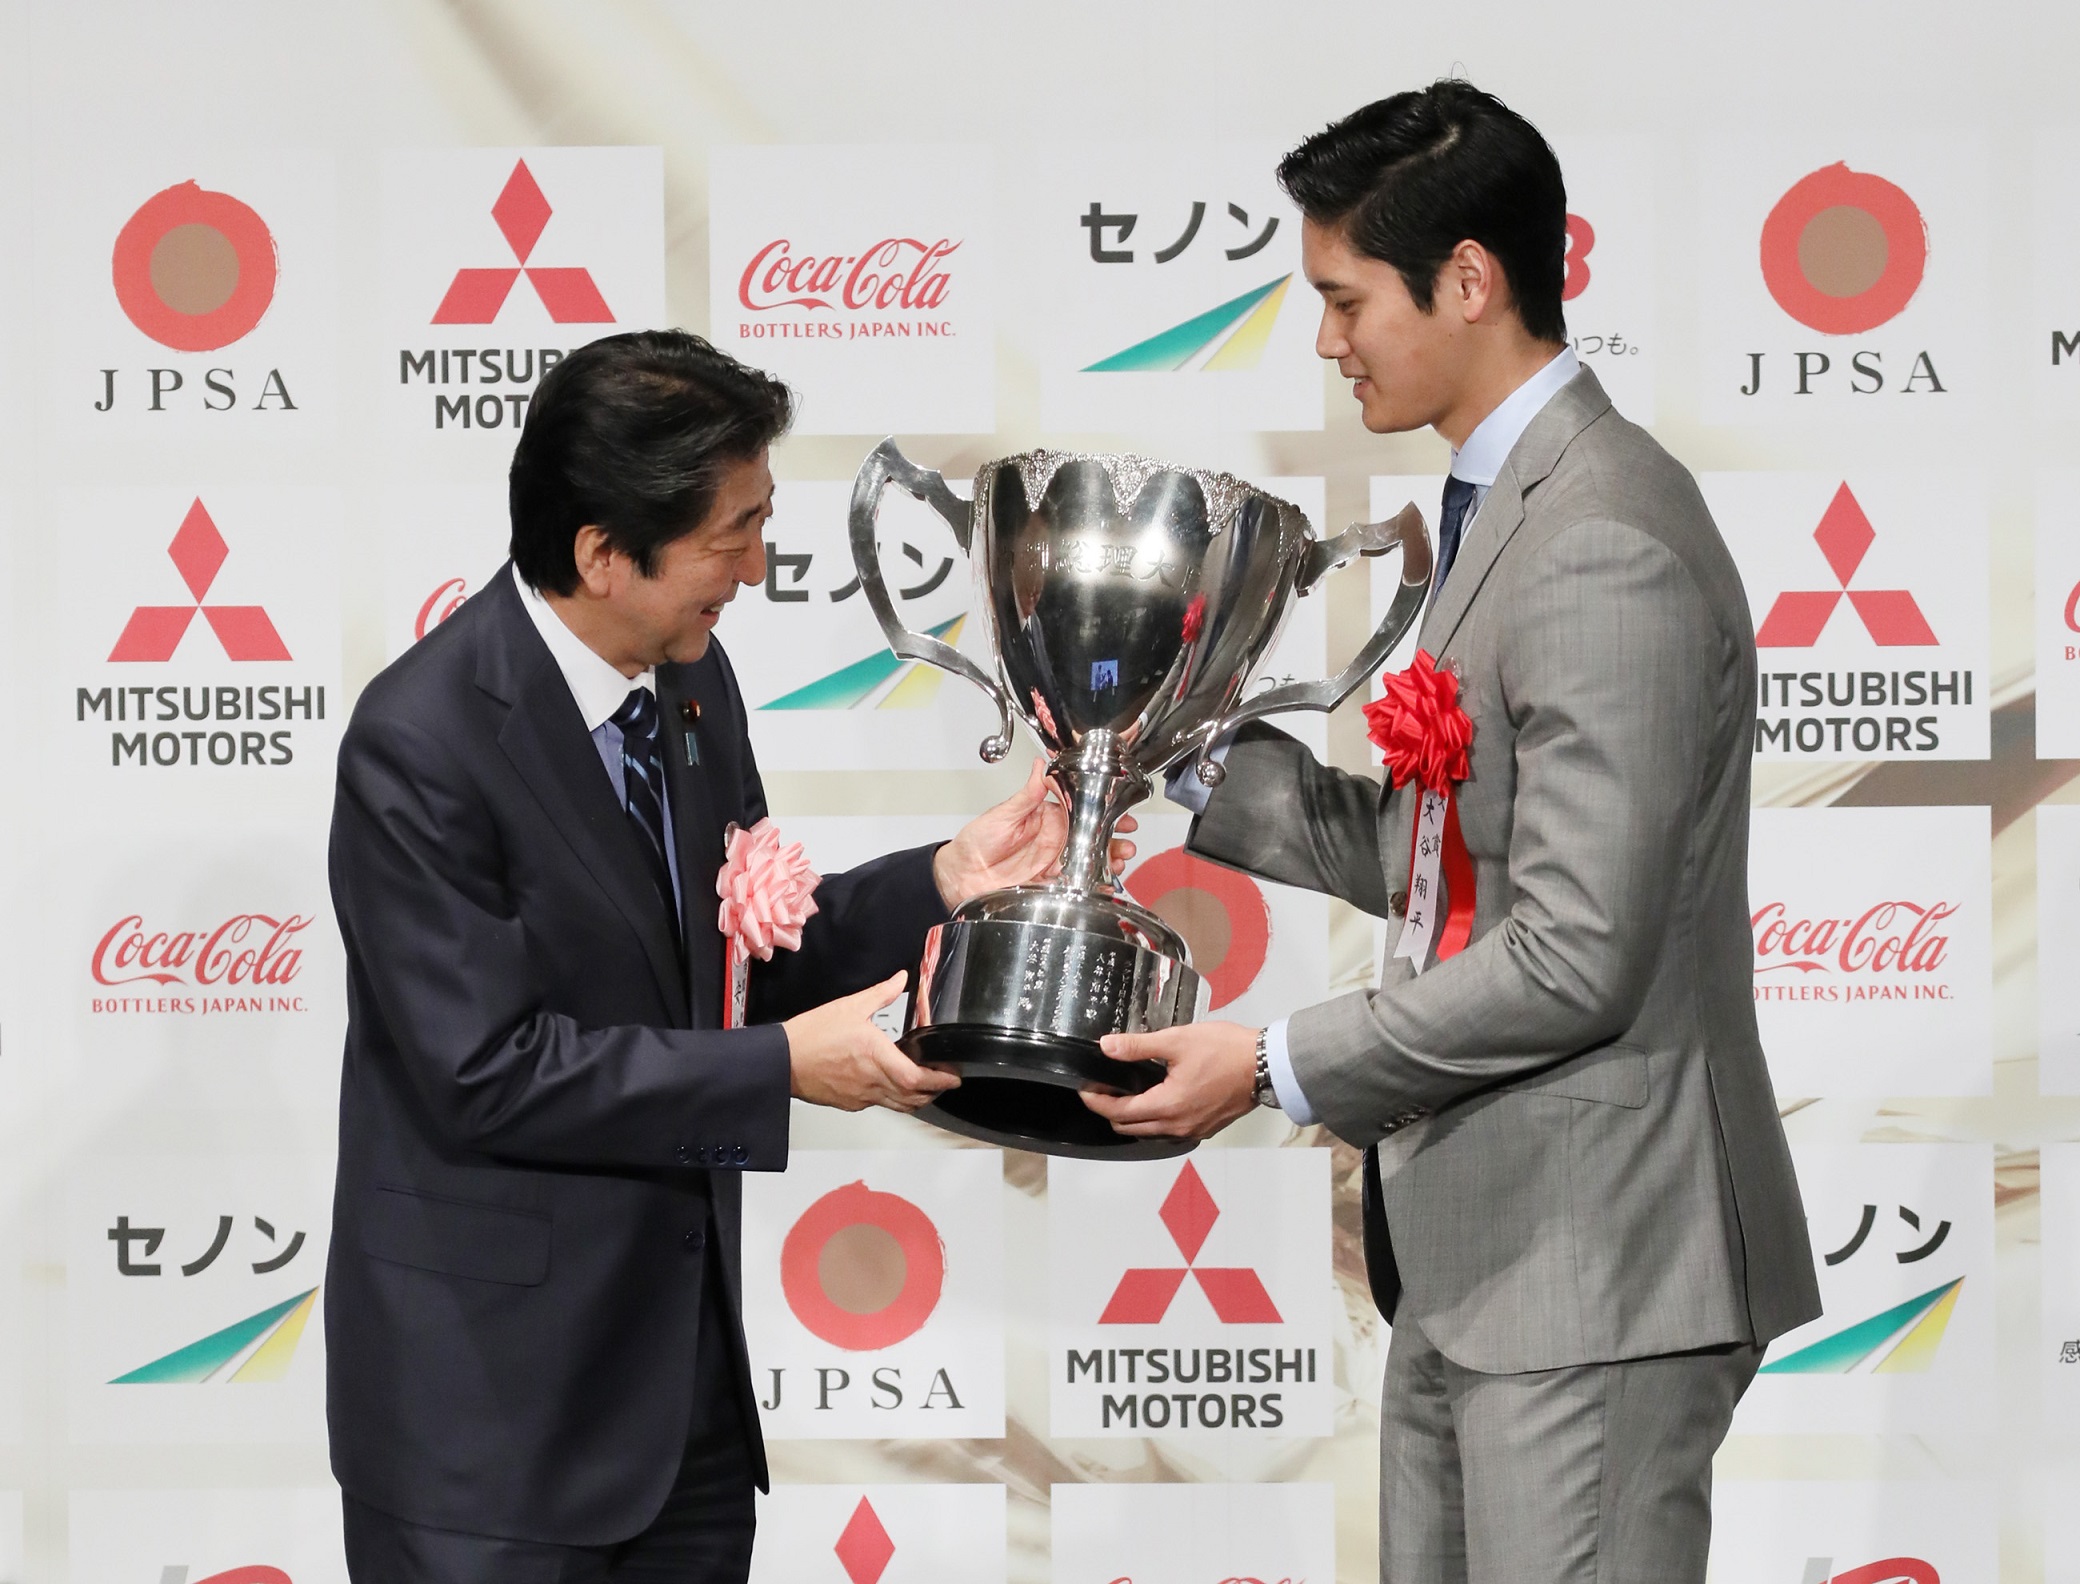 安倍总理出席了在东京都内举行的2018年第51届内阁总理大臣杯日本职业体育大奖颁奖仪式。